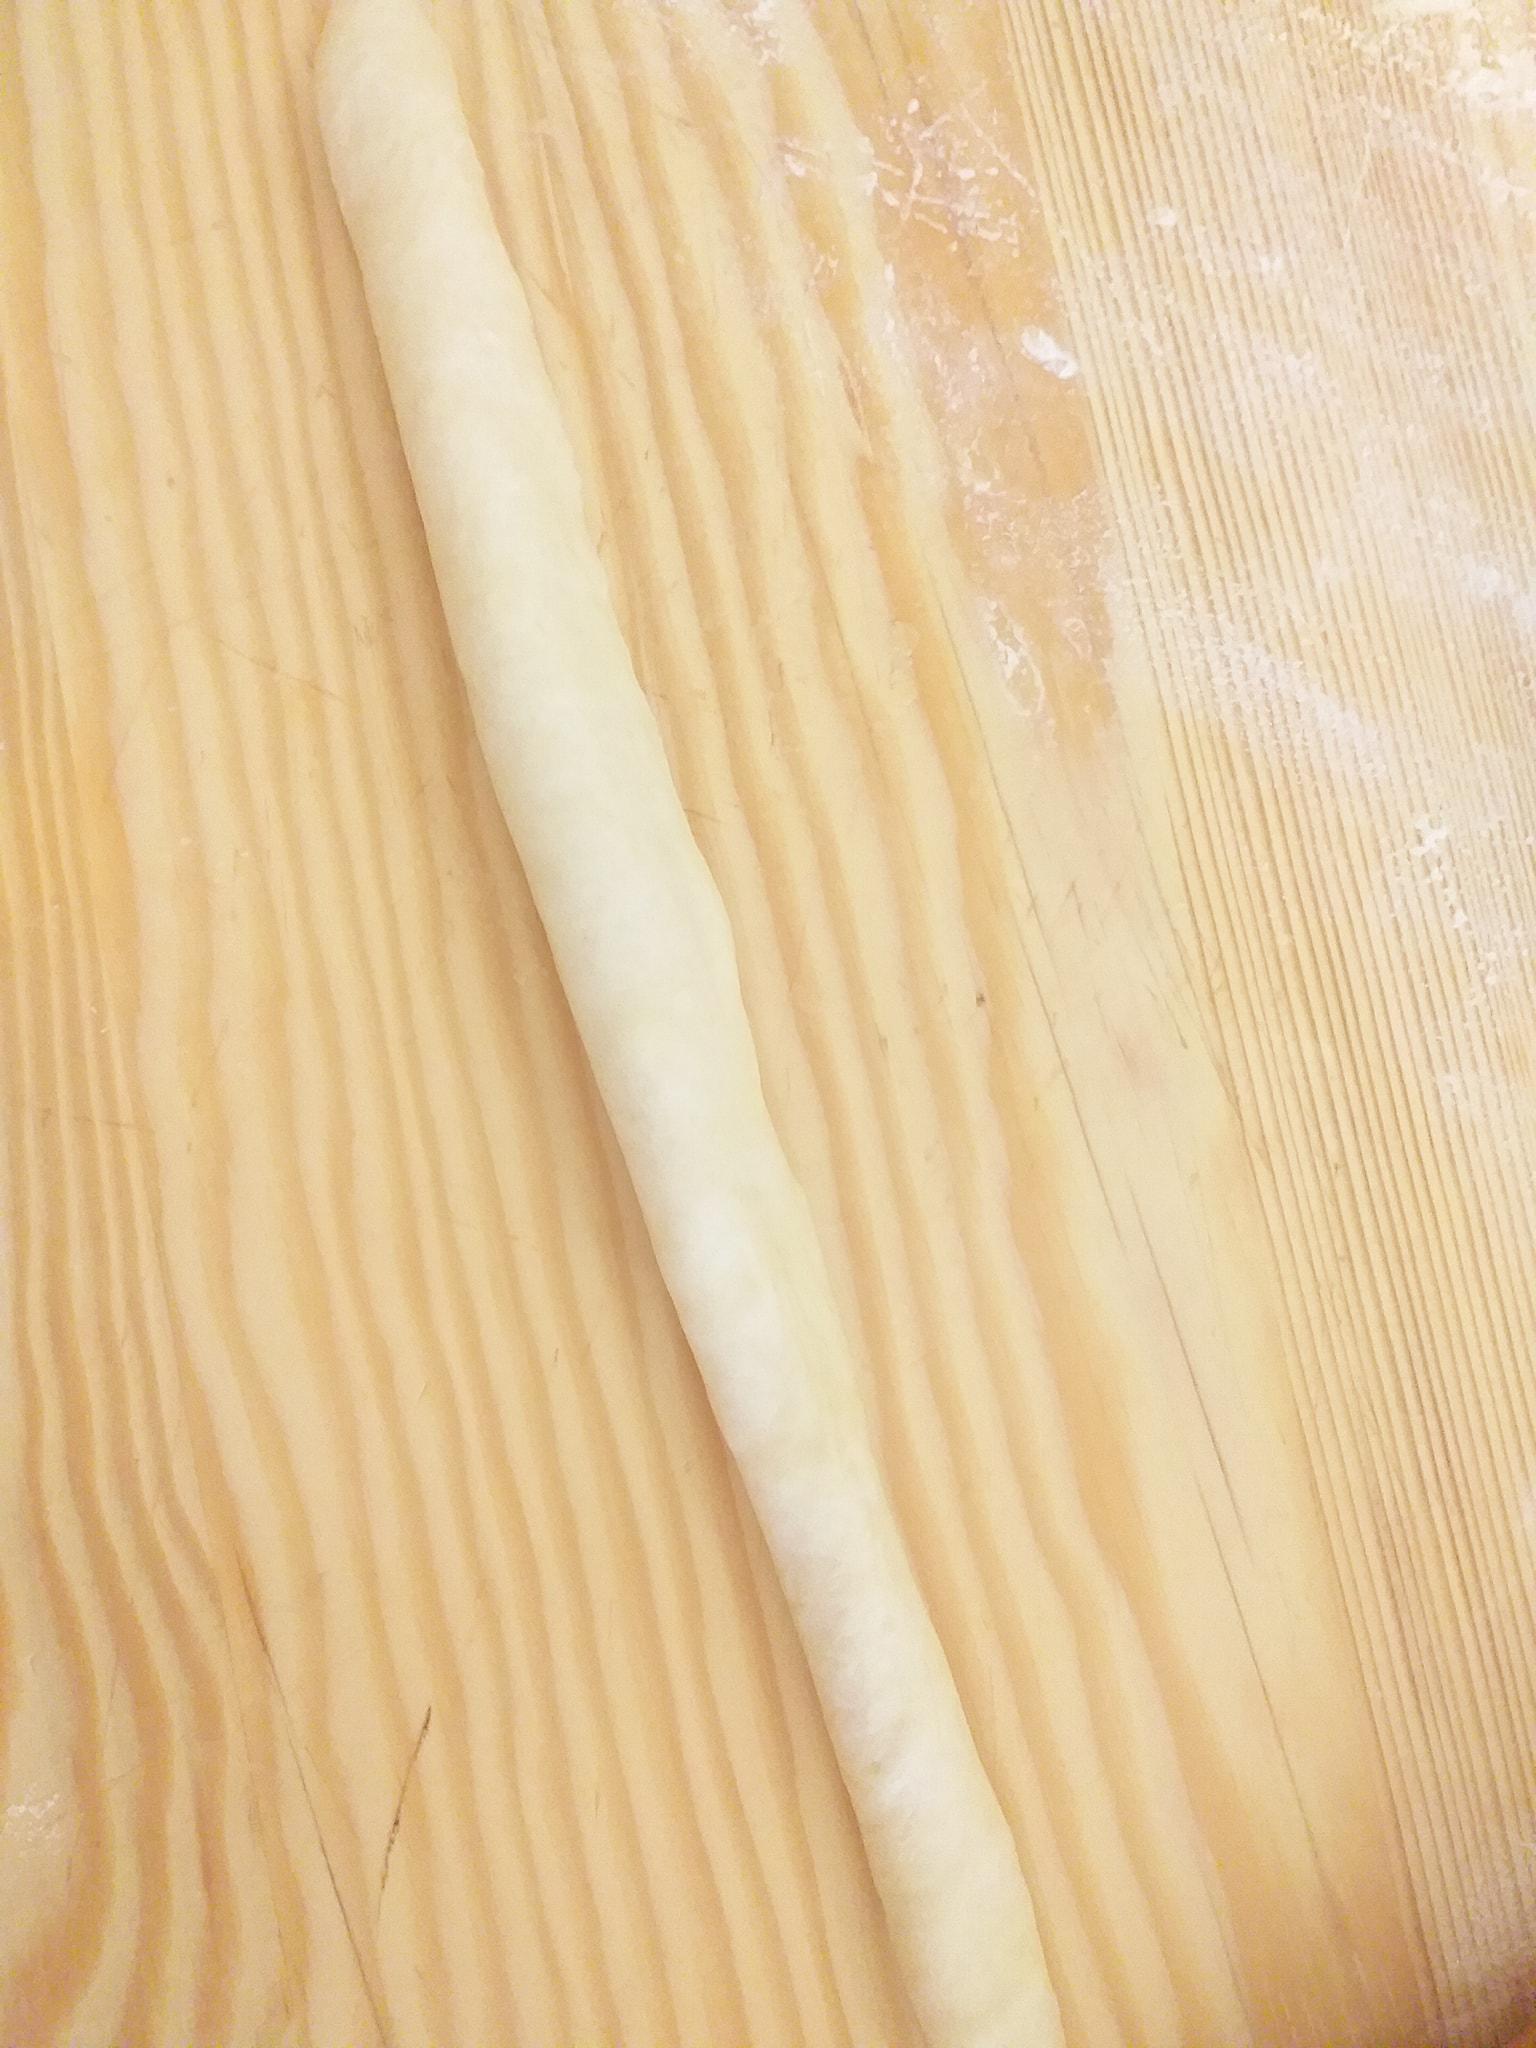 ψωμάκια-με-τυρί-και-μυζήθρα-συνταγή-